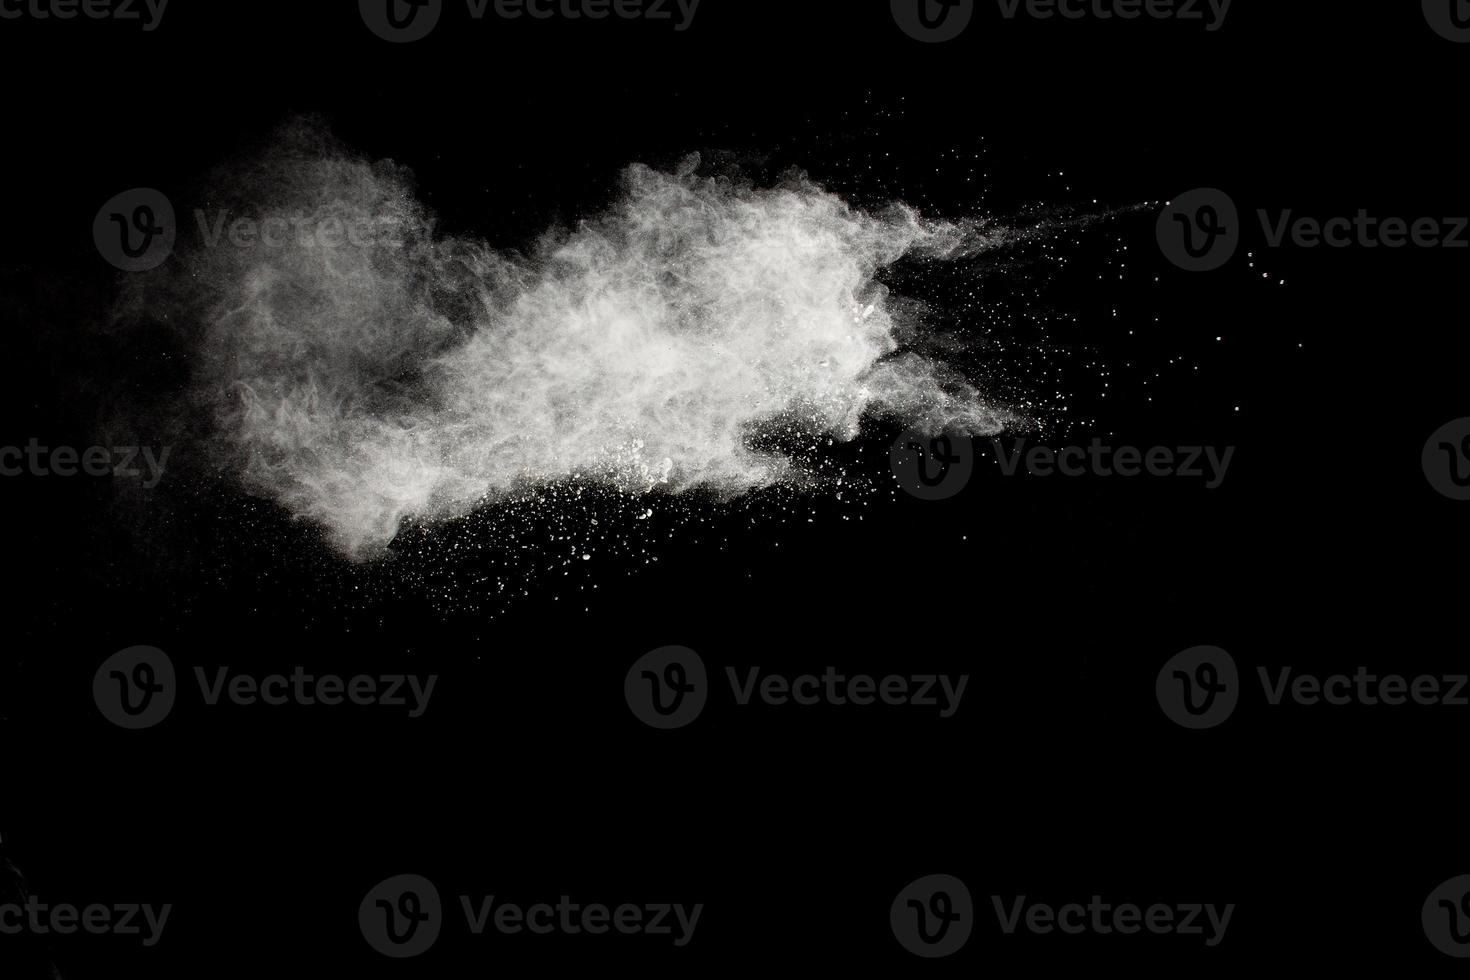 nuages d'explosion de poudre blanche. mouvement de gel des éclaboussures de particules de poussière blanche sur fond noir. photo